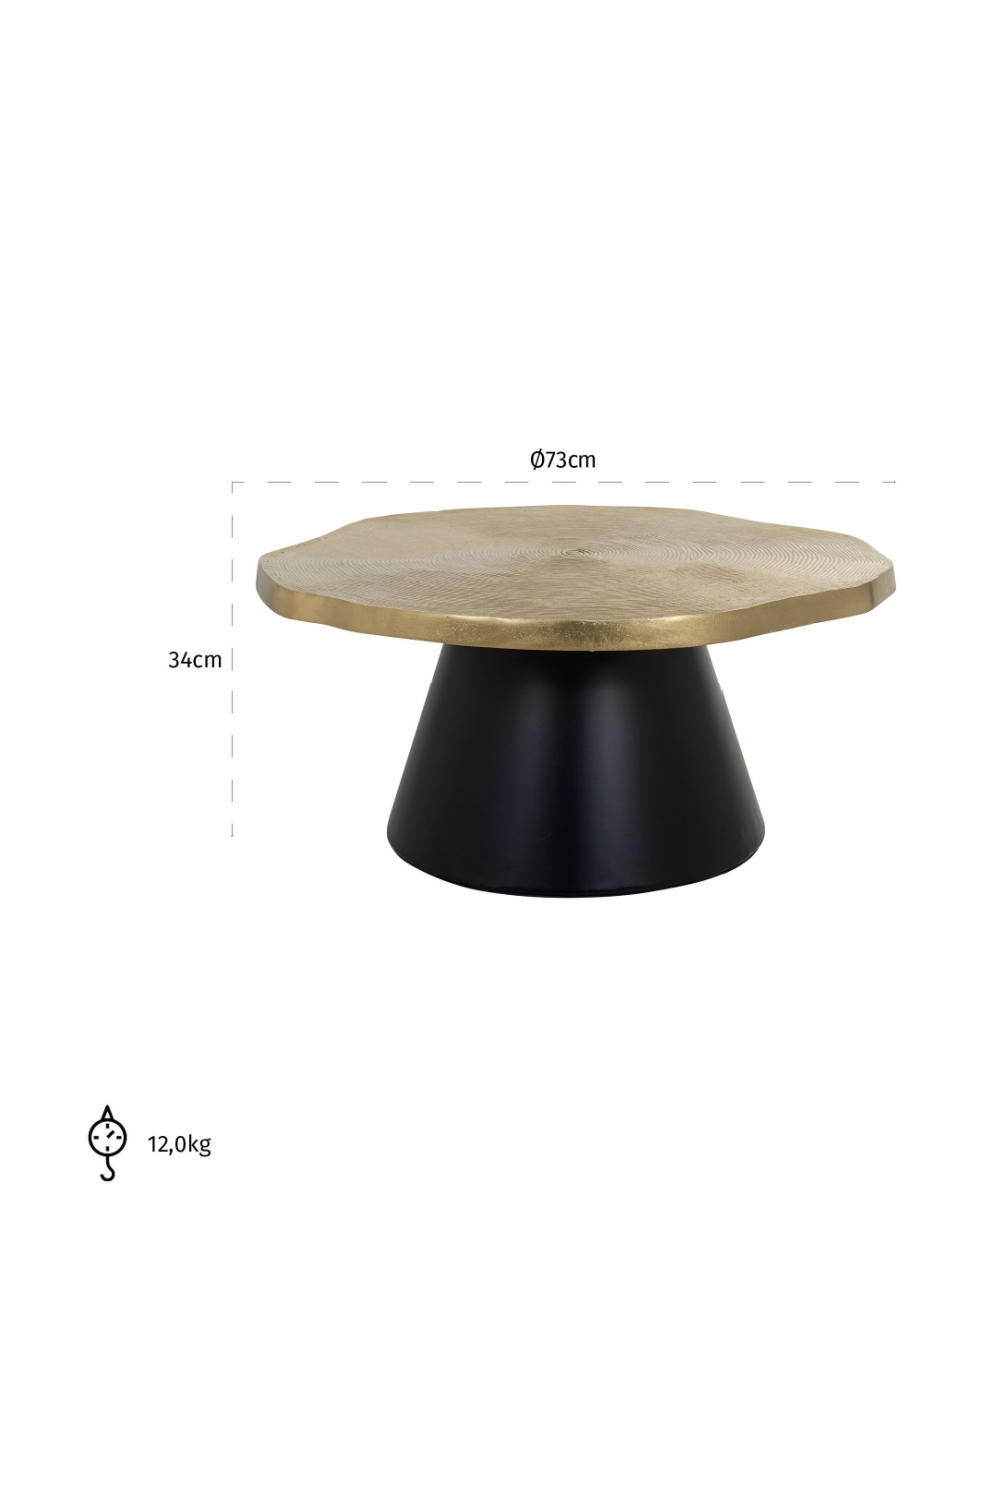 Organic Shaped Coffee Table | OROA Sassy | Oroa.com